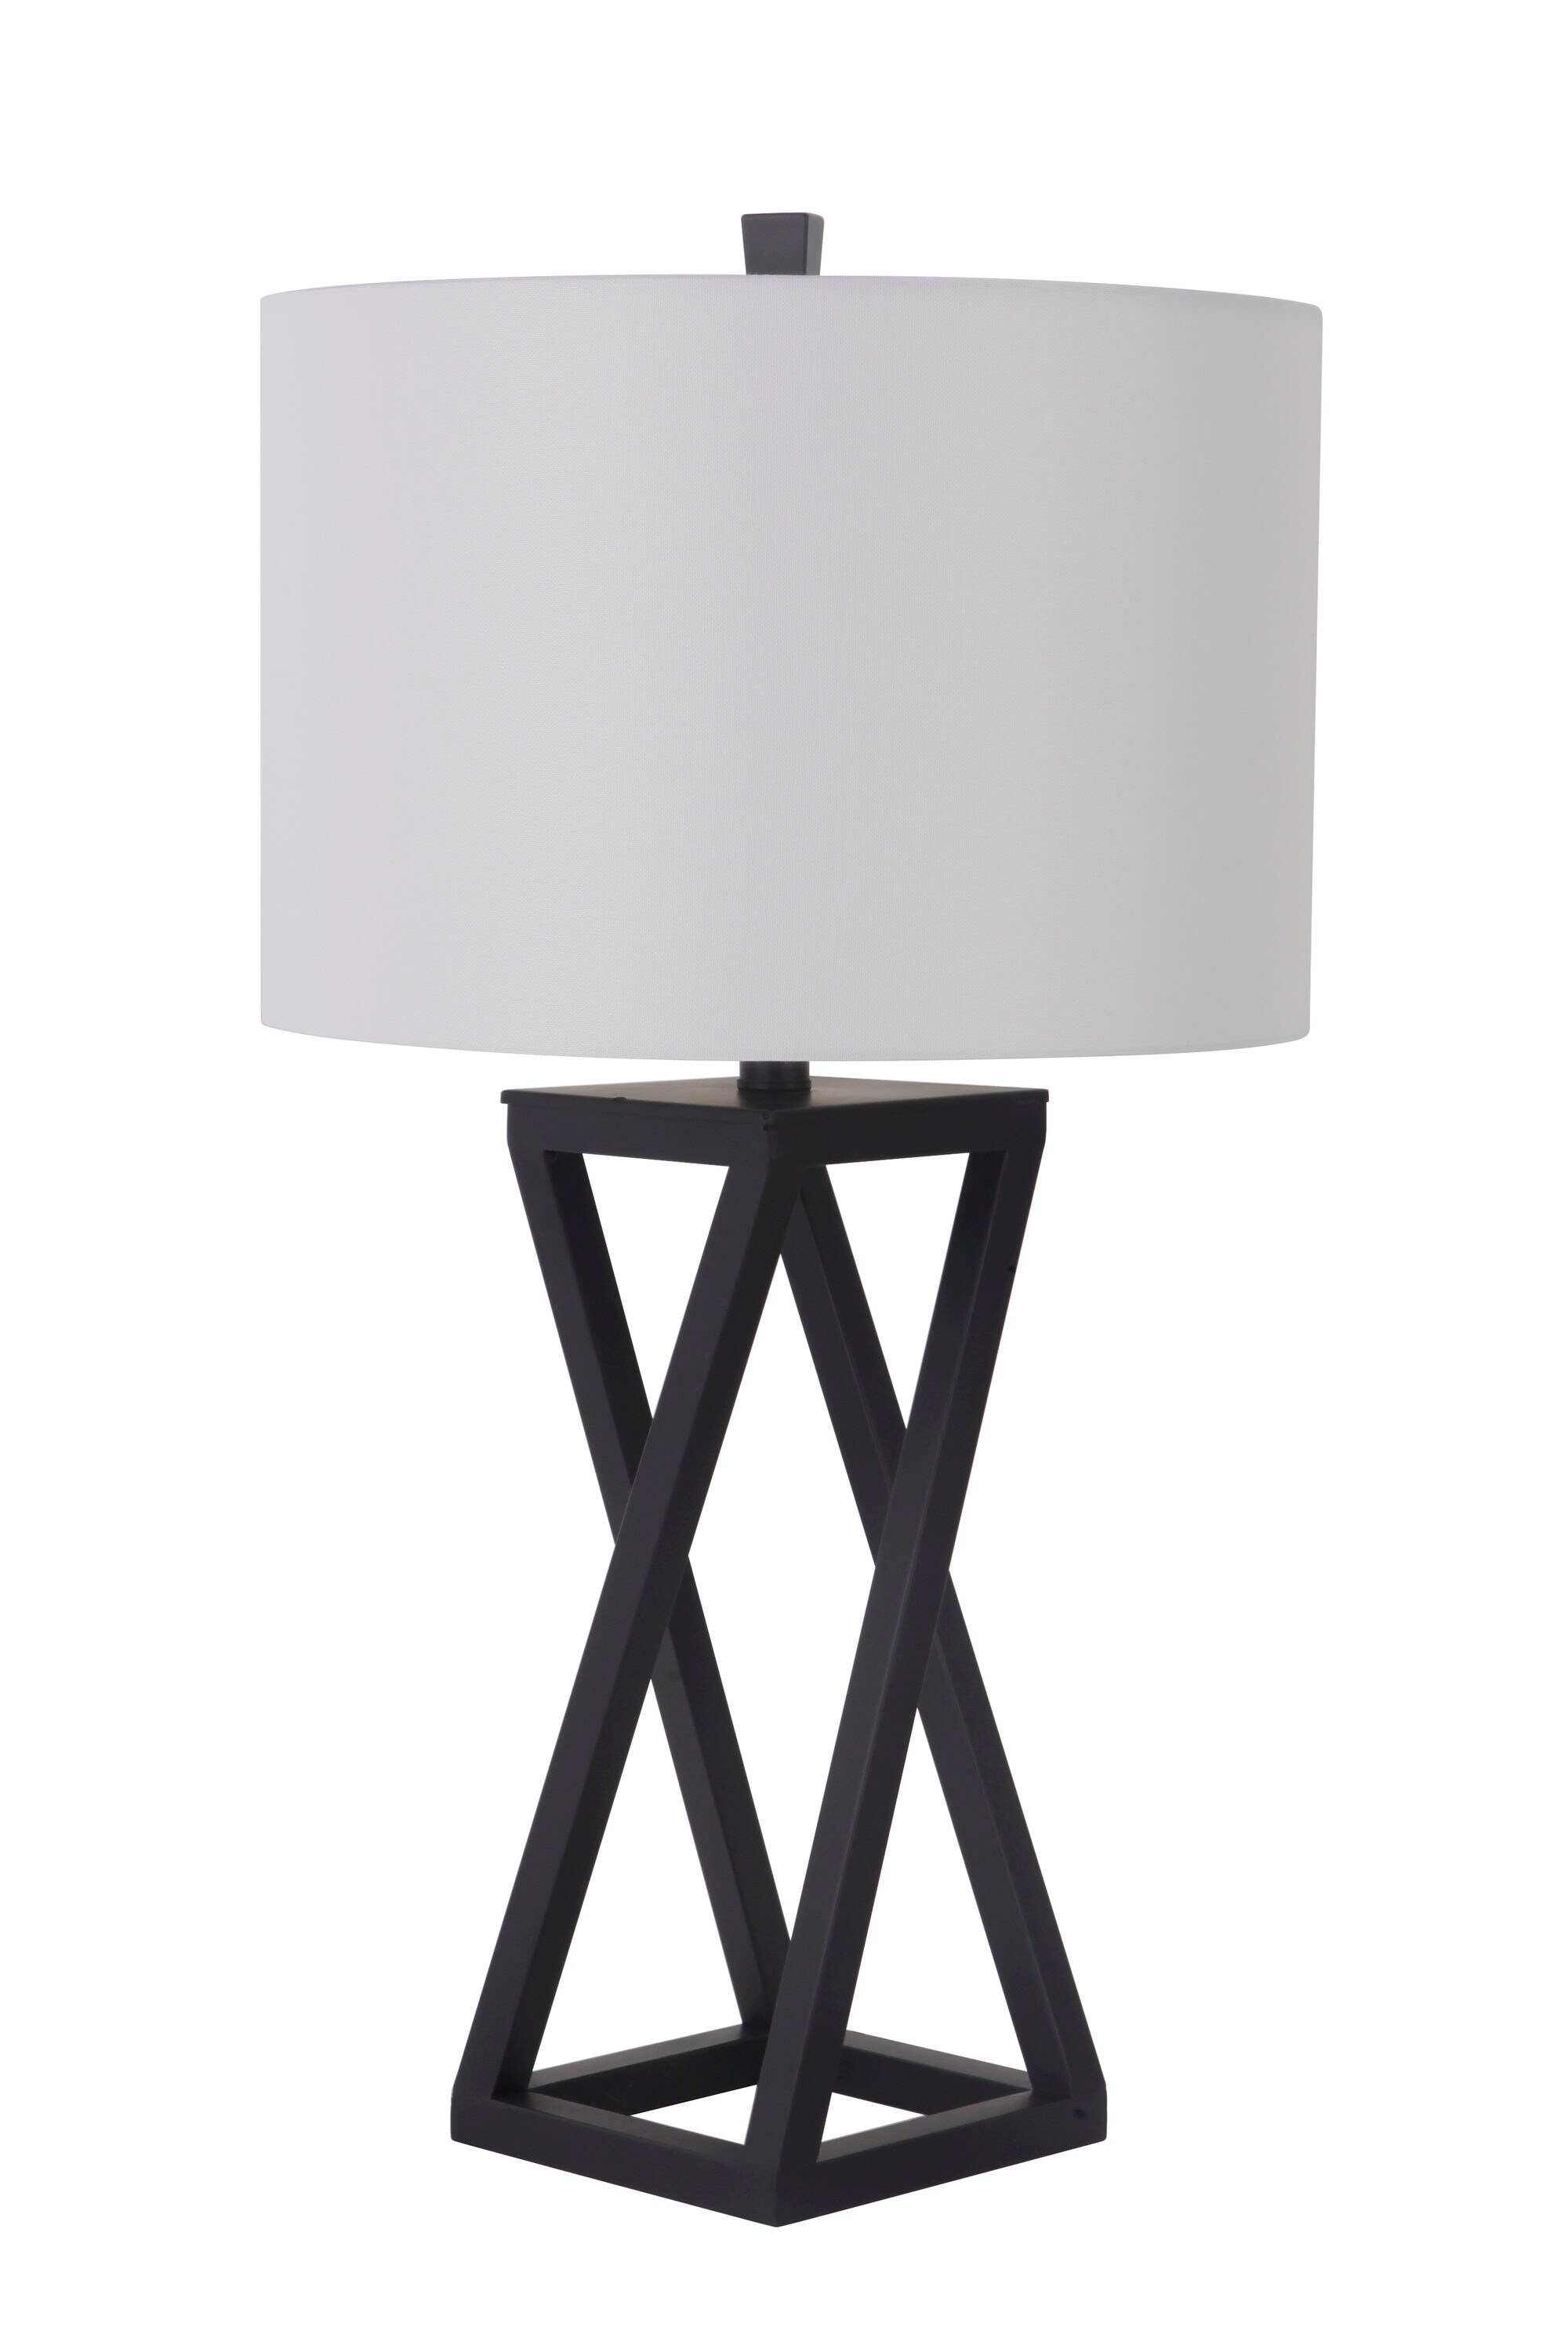 Black Lamp Shade Cloth Table Lamp Shade Universal Reading Lamp Shades Decor 